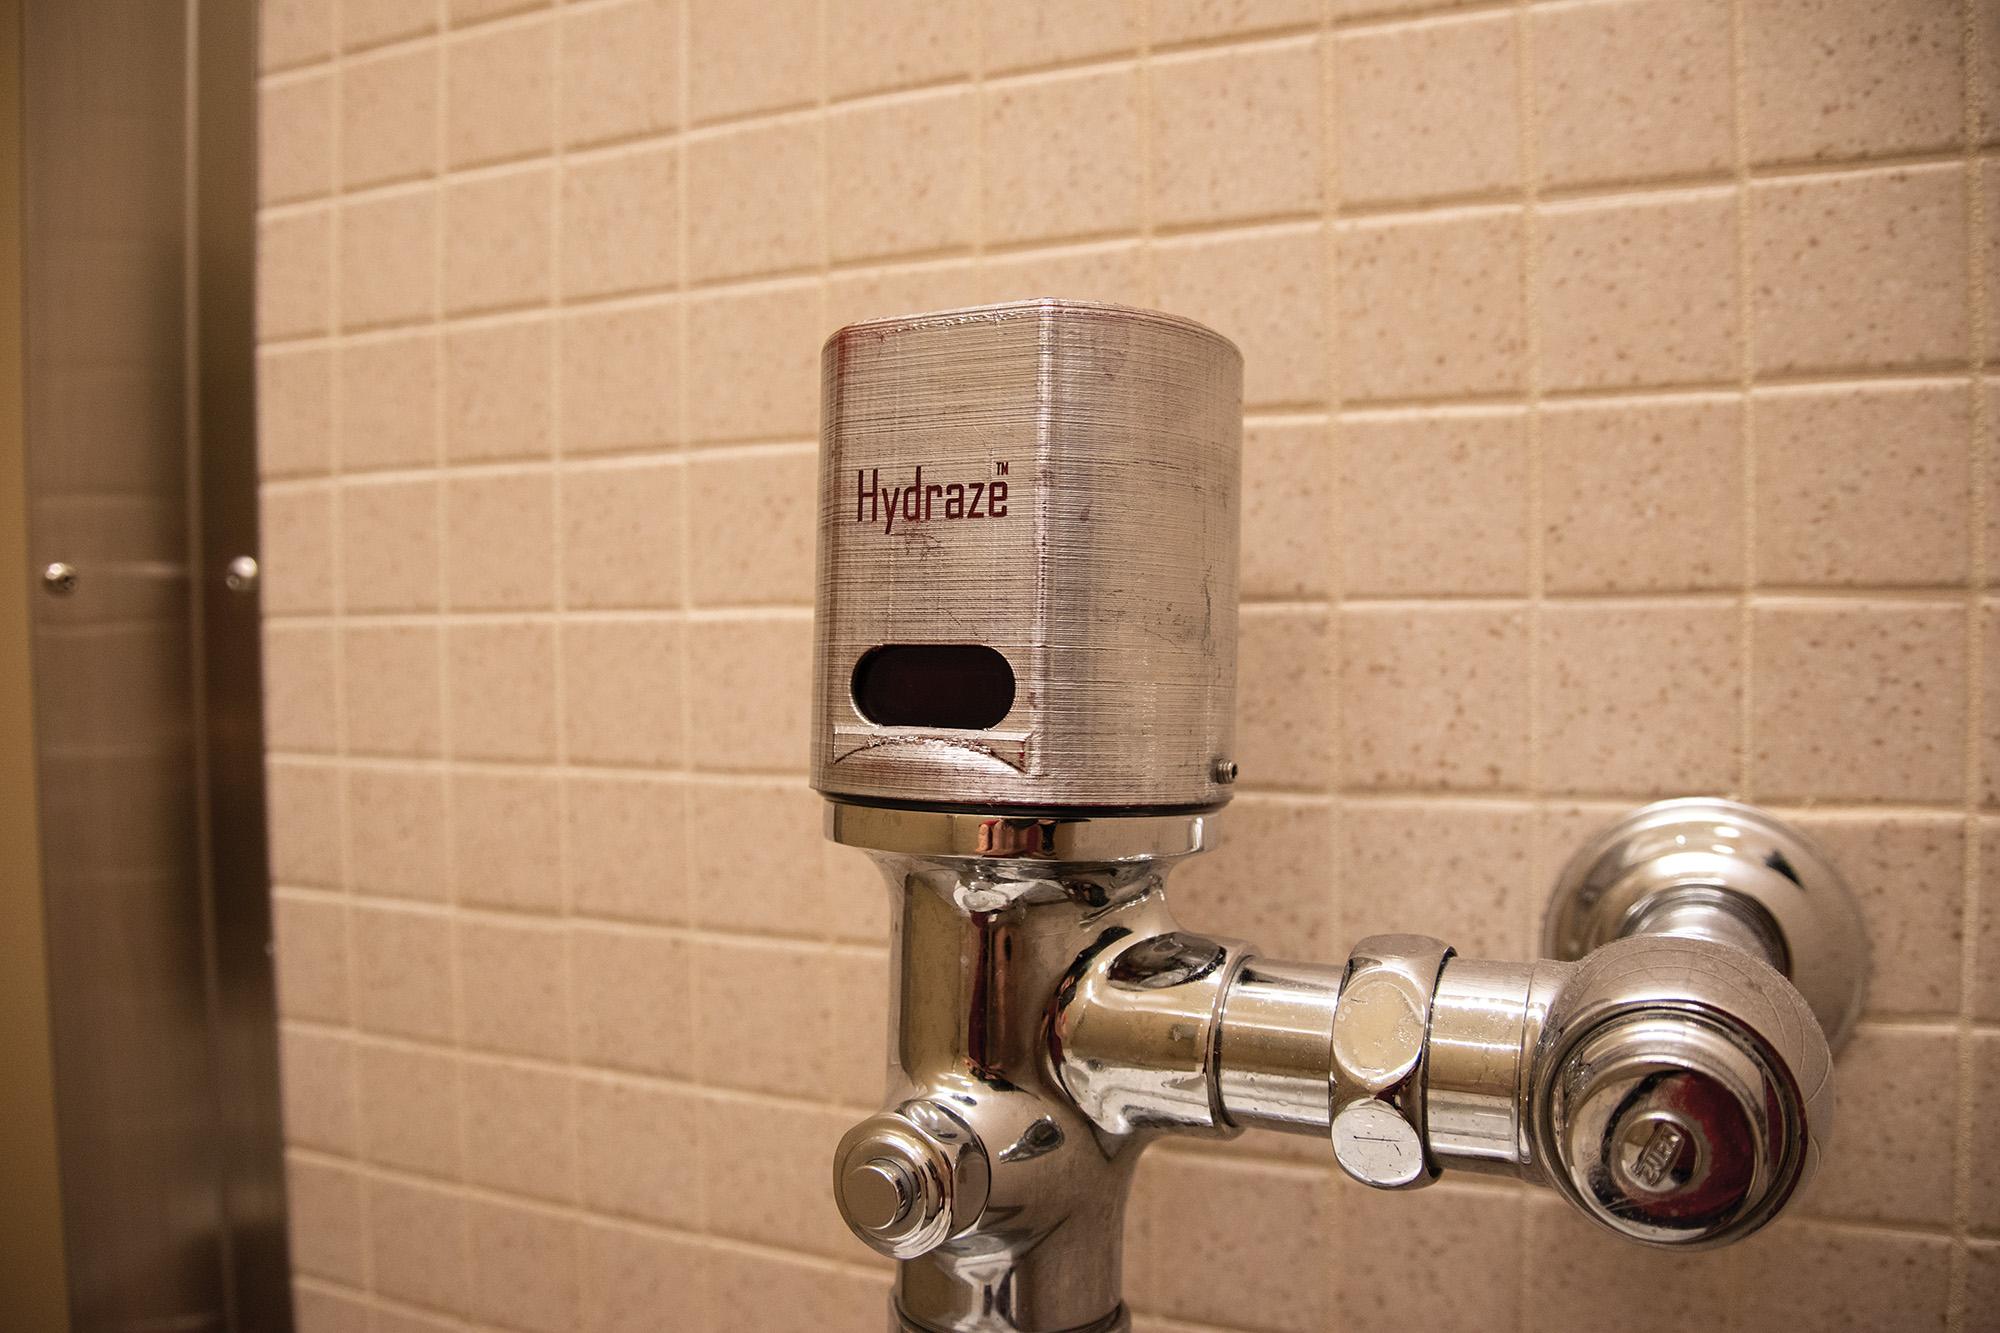 Hydraze Toilet flushing system